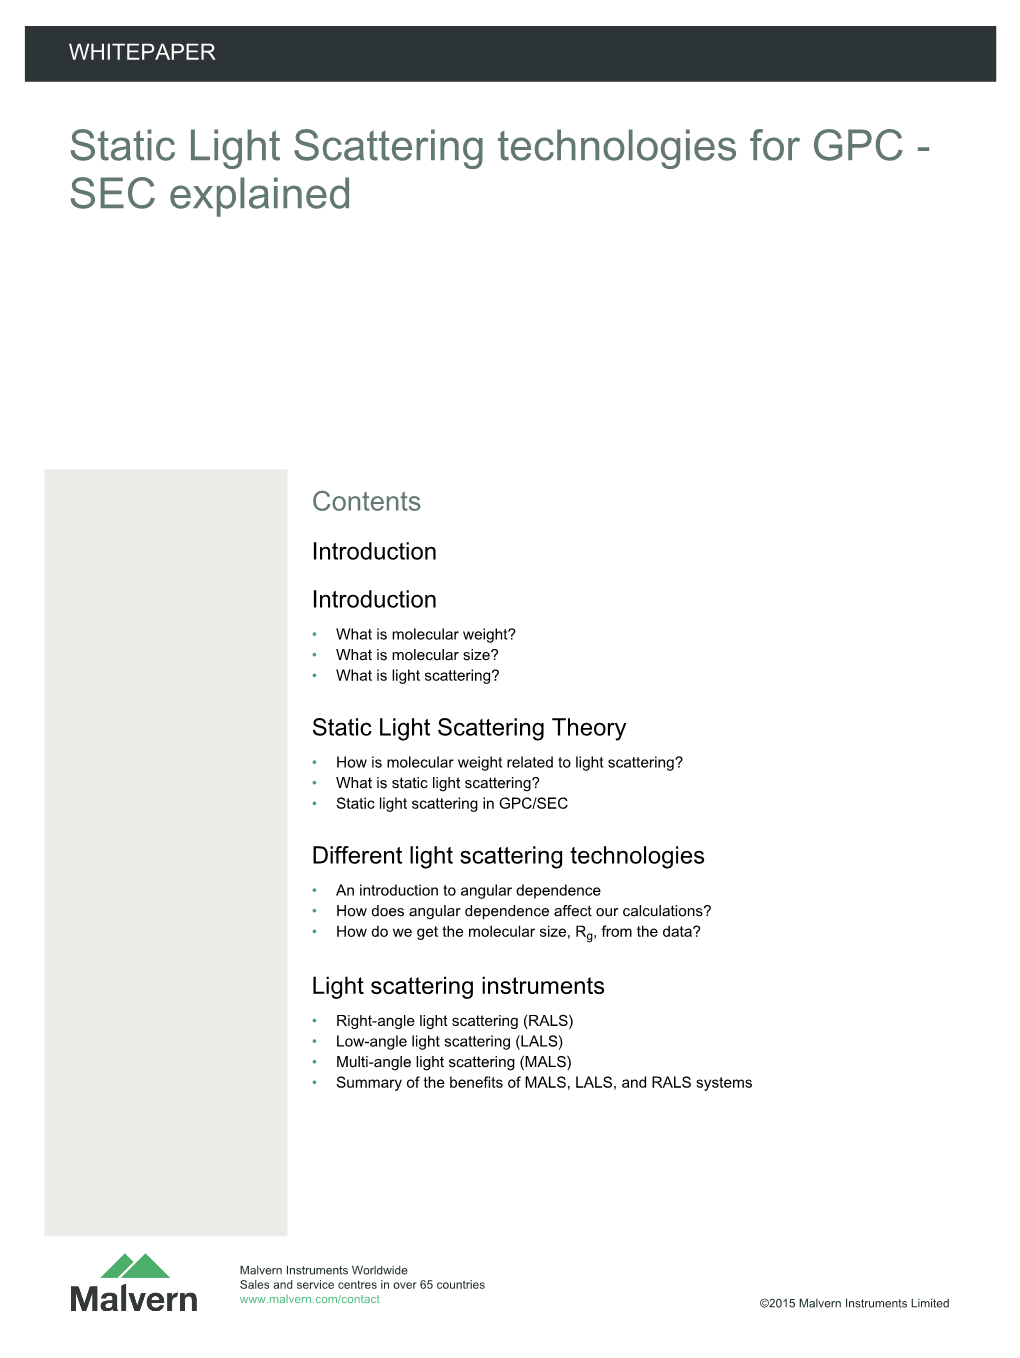 Static Light Scattering Technologies for GPC - SEC Explained